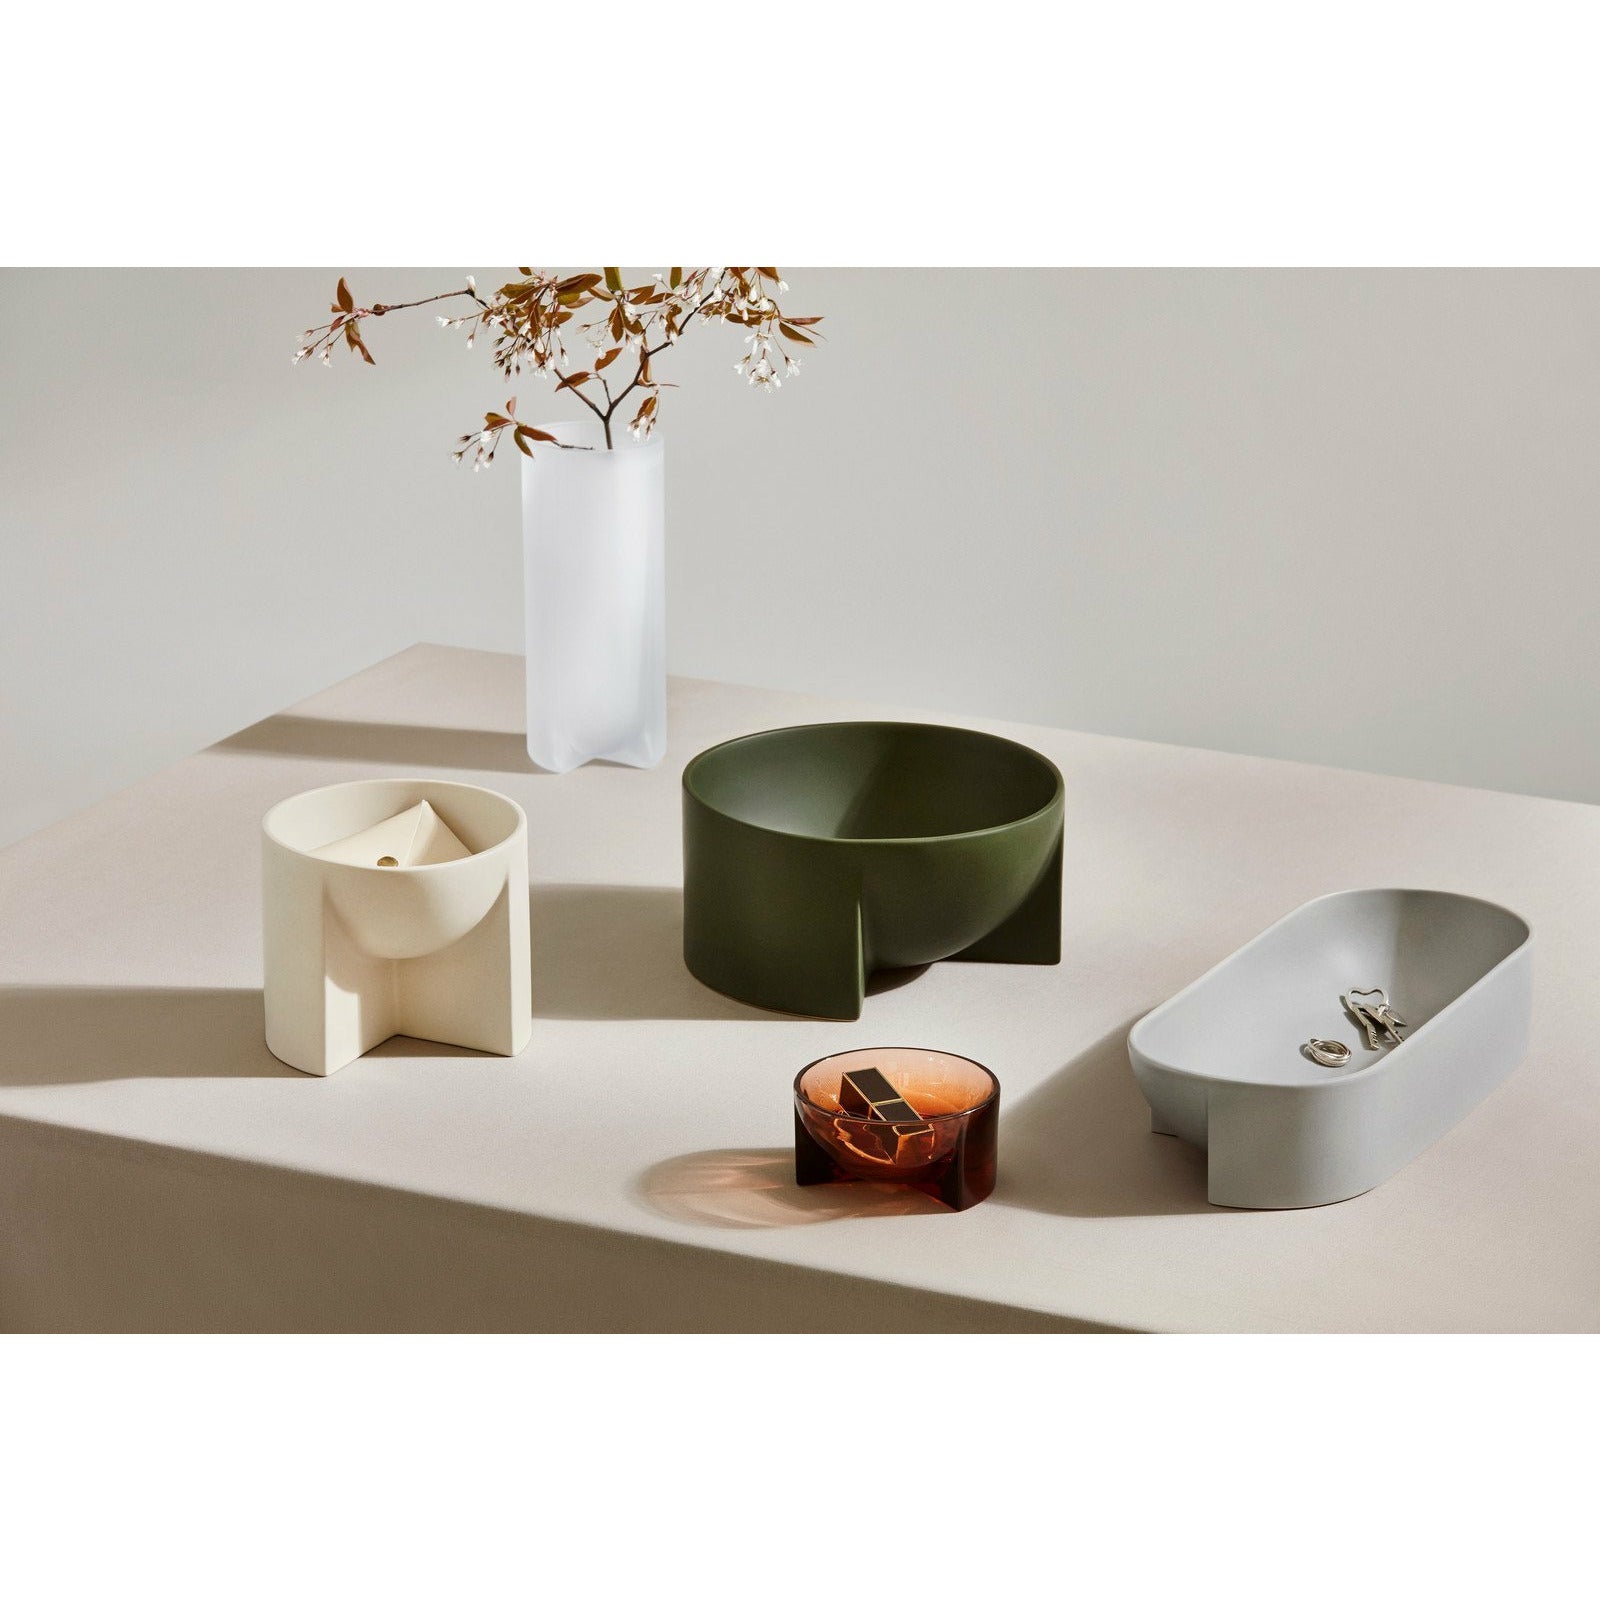 Iittala Kuru Ceramic Schale Light Grey, 37cm-Schüsseln-Iittala-6411923667937-1051706-IIT-inwohn